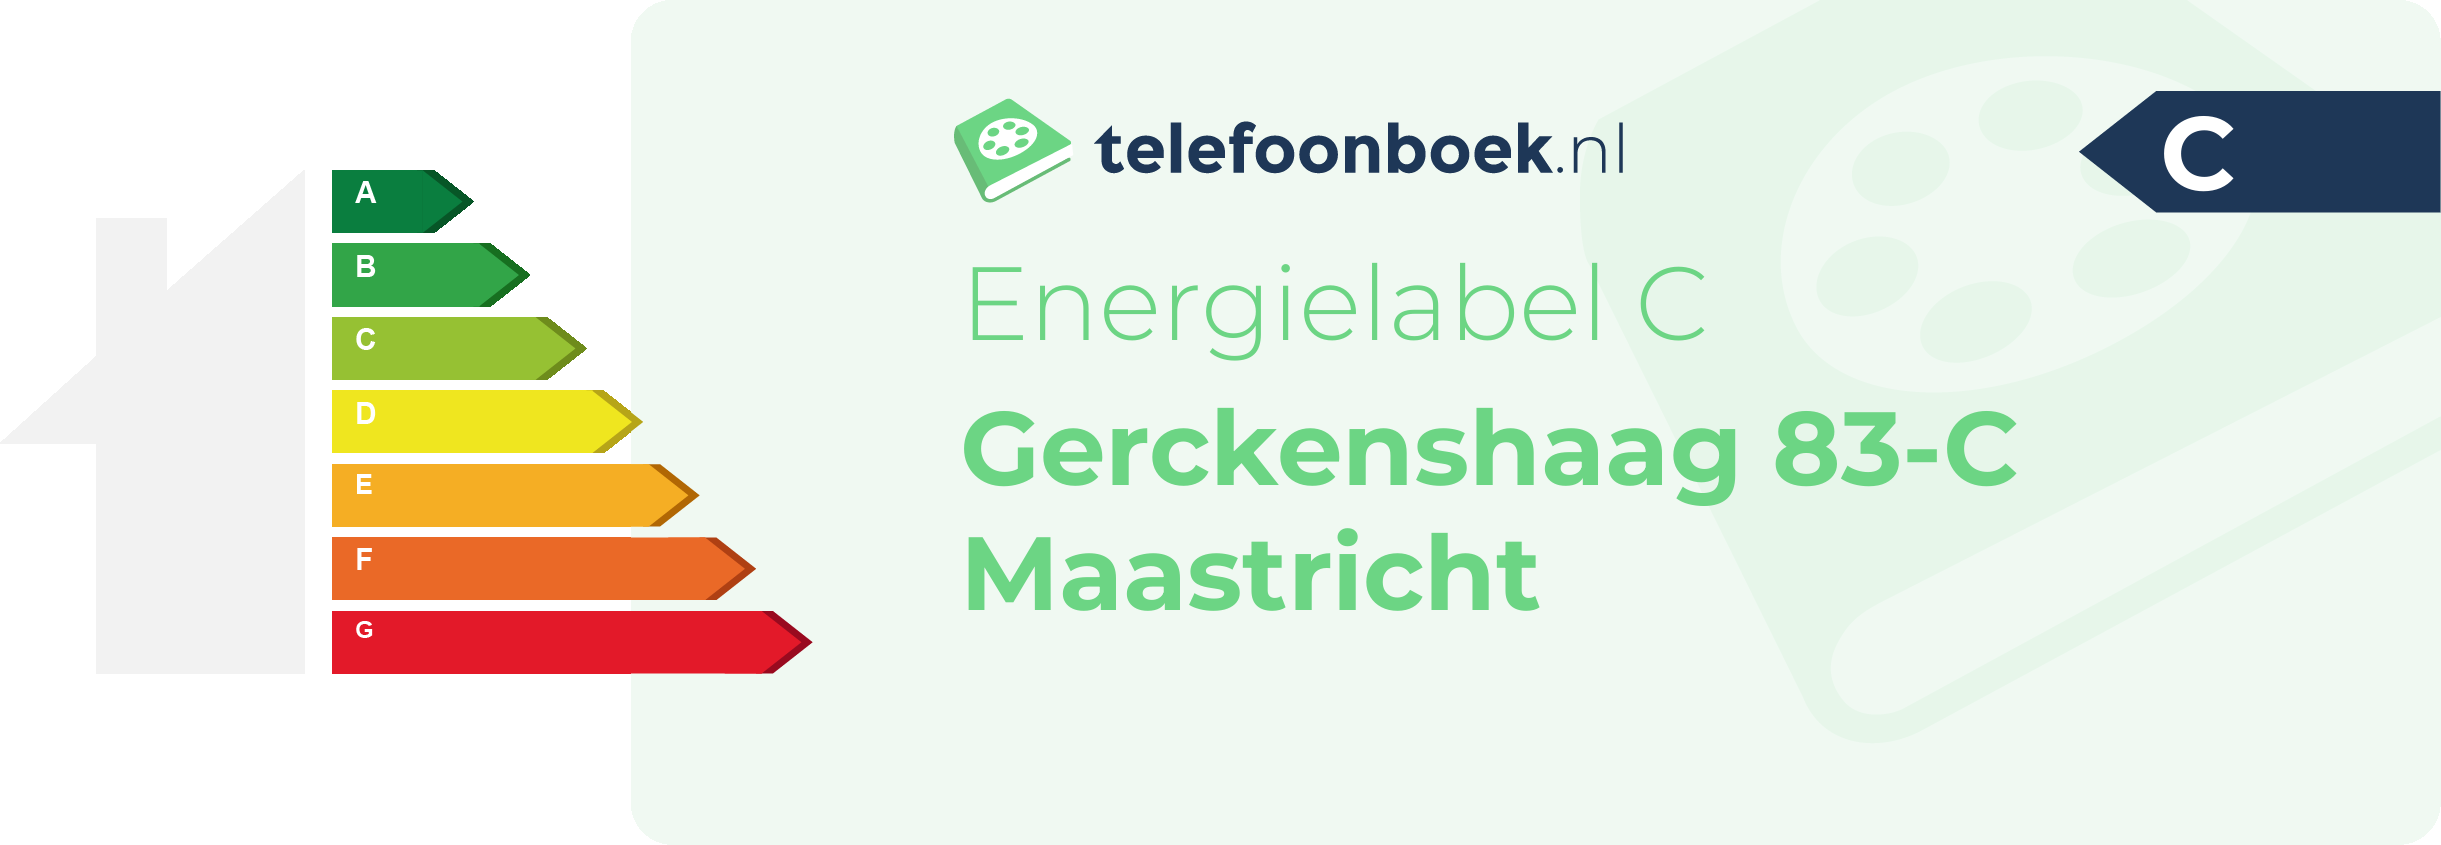 Energielabel Gerckenshaag 83-C Maastricht